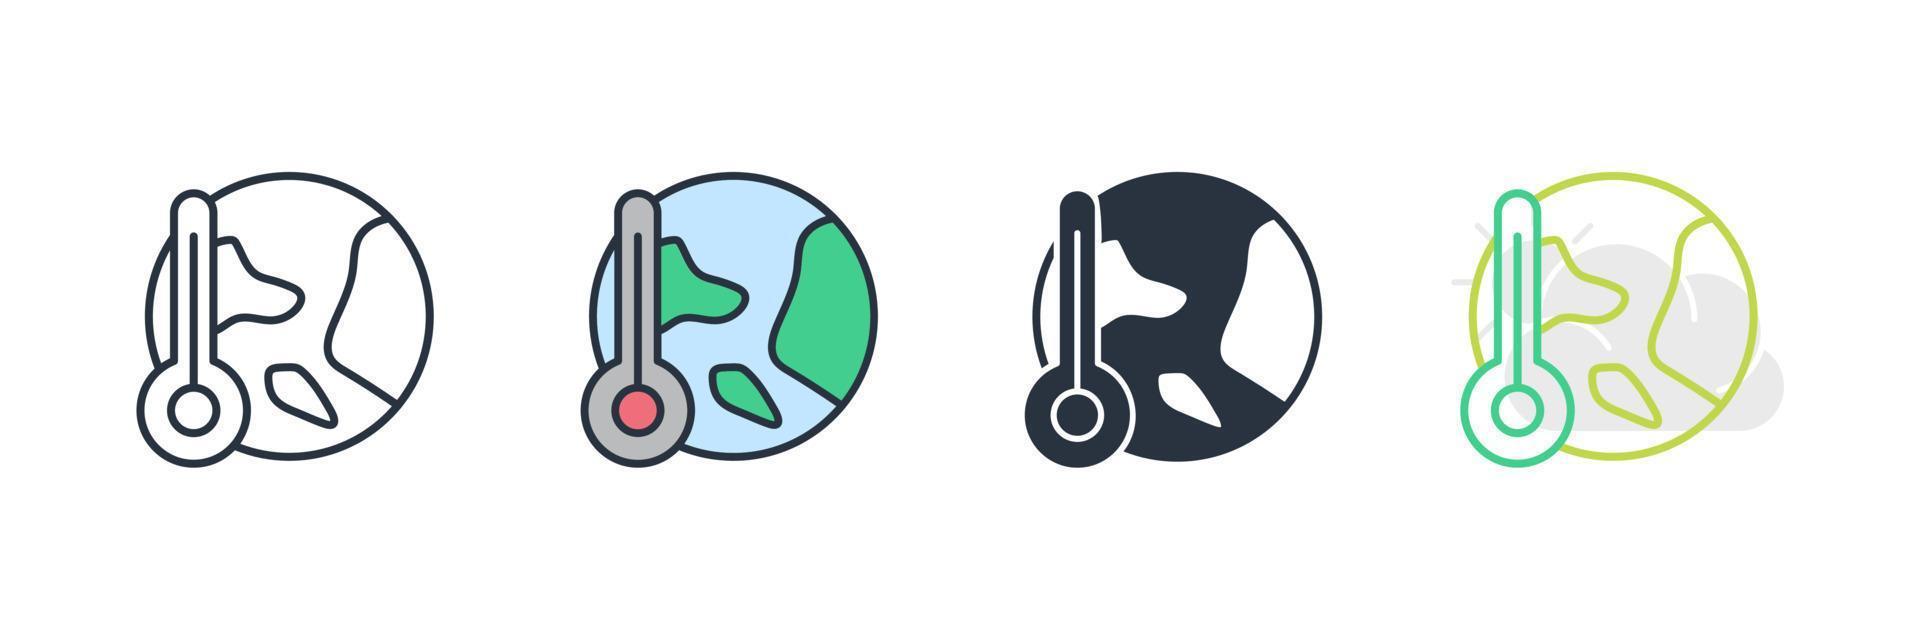 illustration vectorielle du logo de l'icône du réchauffement climatique. modèle de symbole de température globale pour la collection de conception graphique et web vecteur